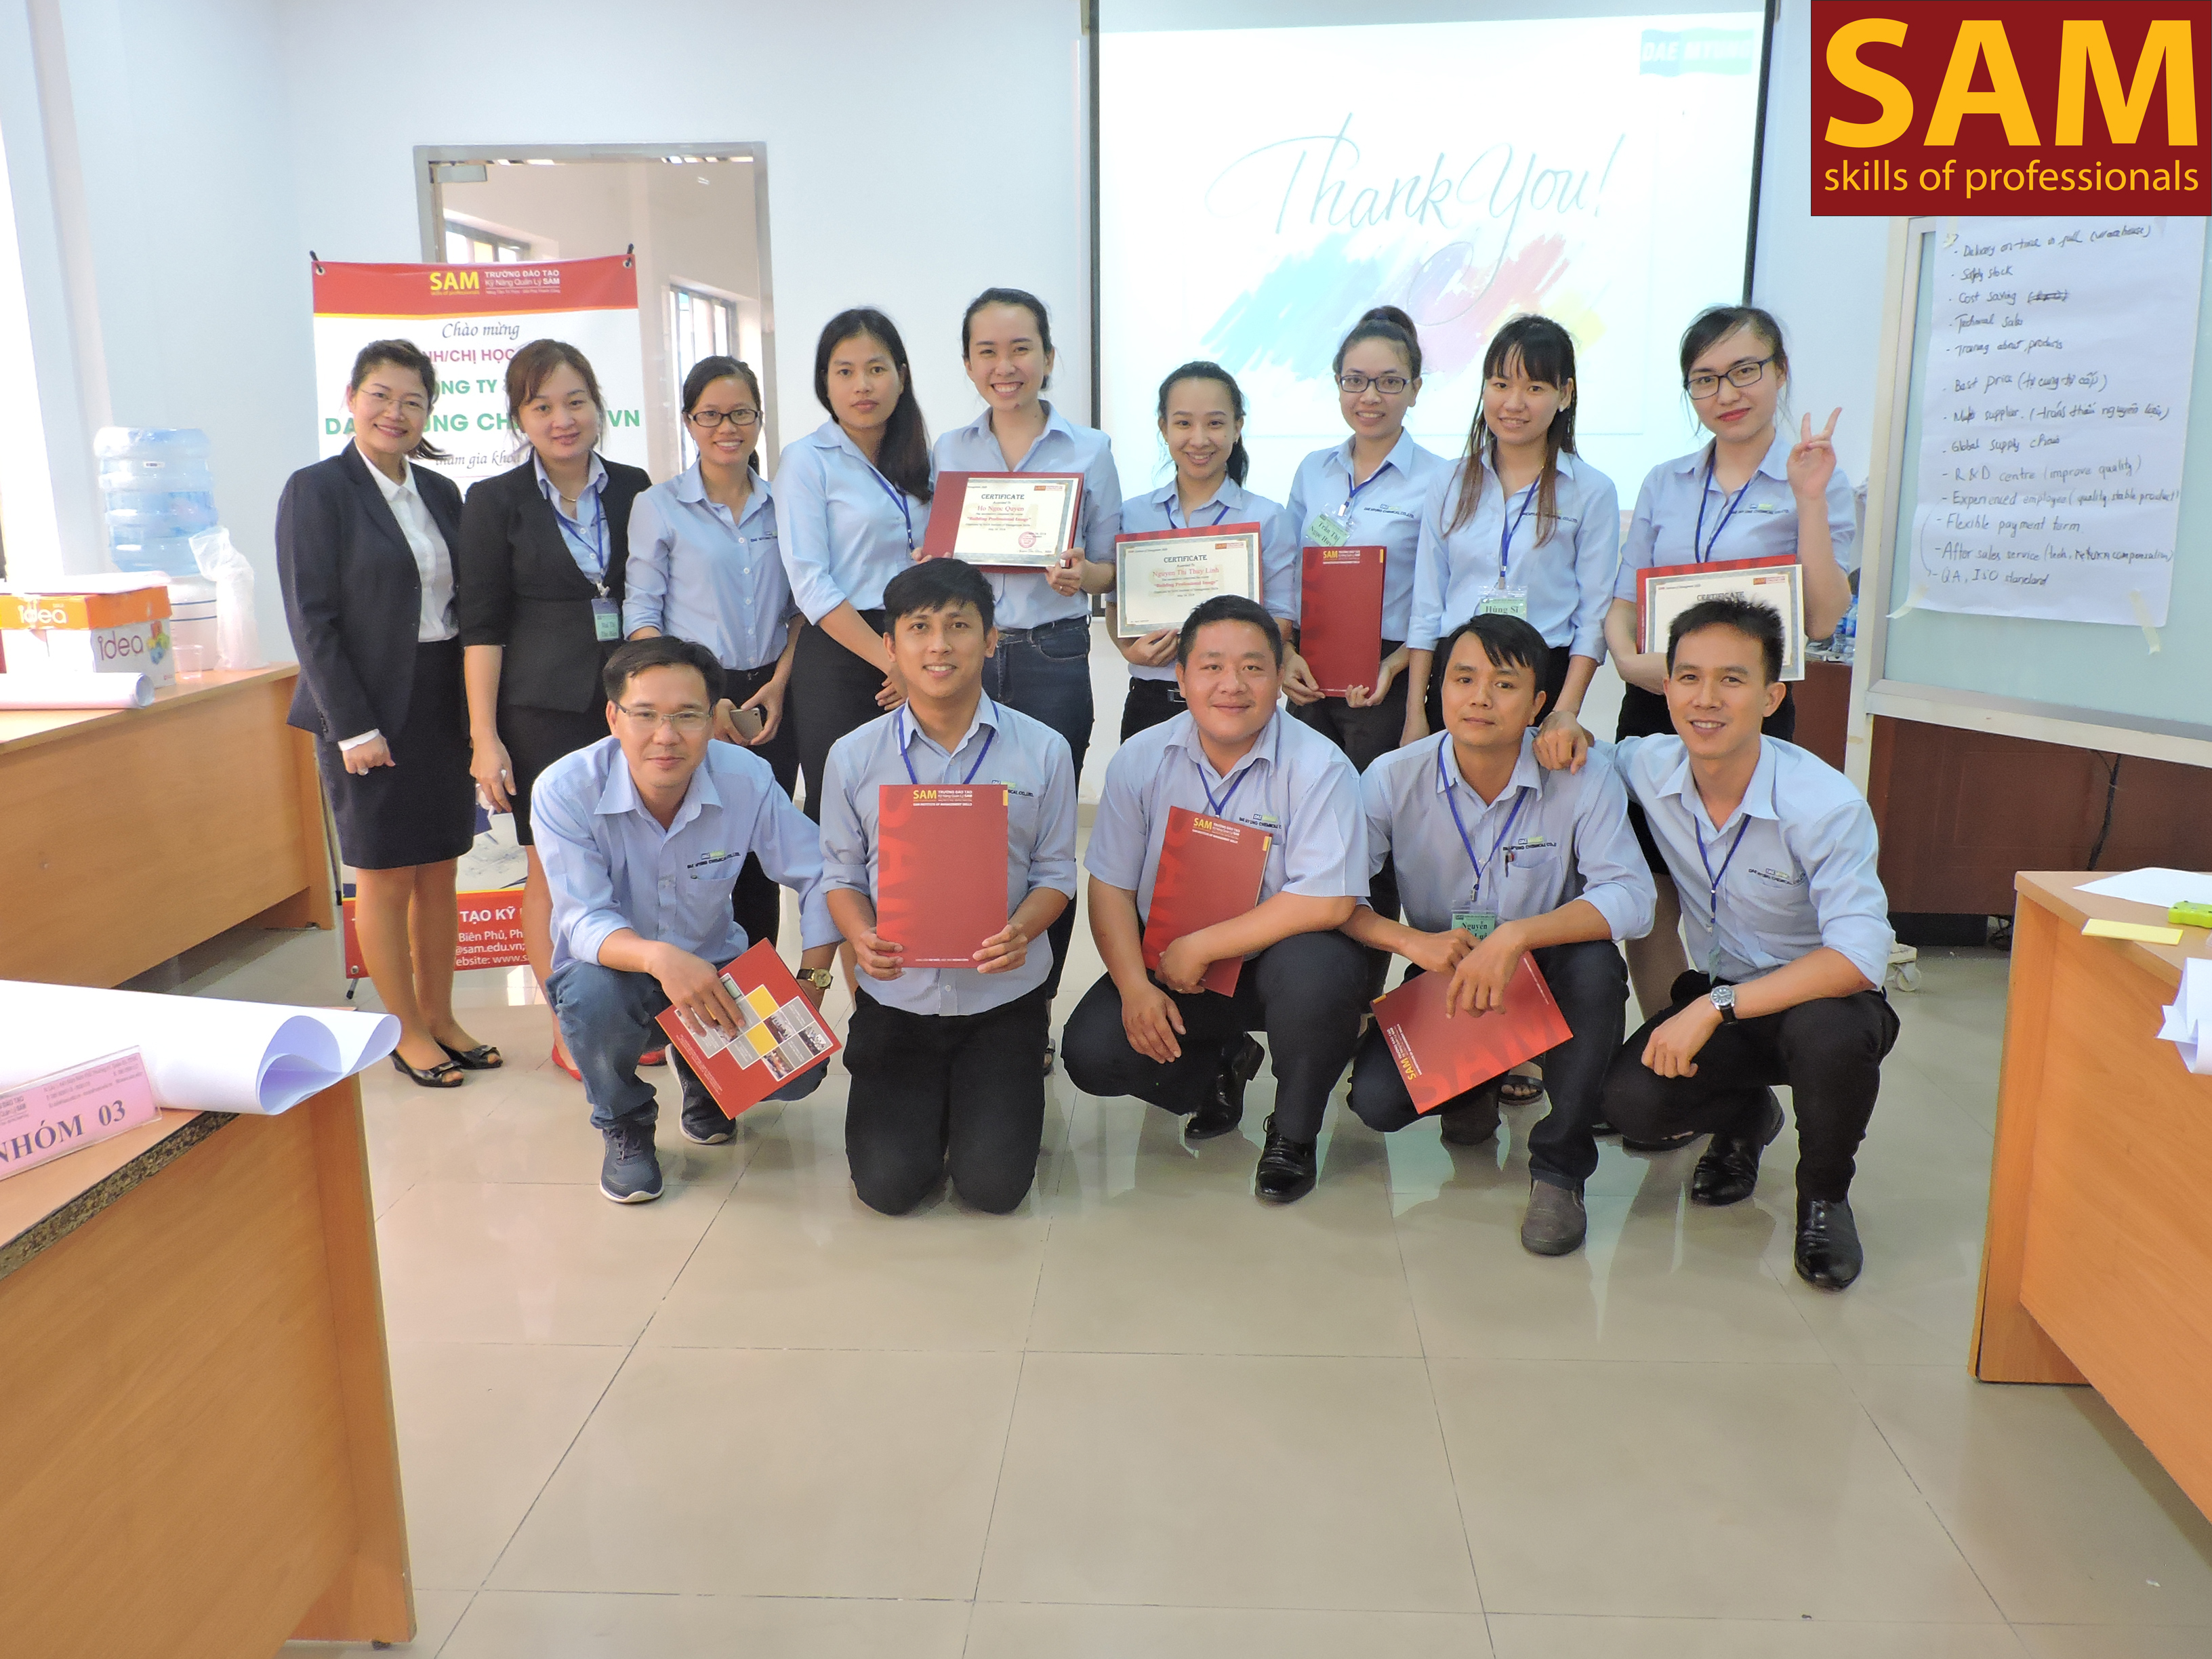 Chương Trình Đào Tạo "Xây dựng hình ảnh chuyên nghiệp" - Công ty TNHH Dae Myung Chemical Vietnam